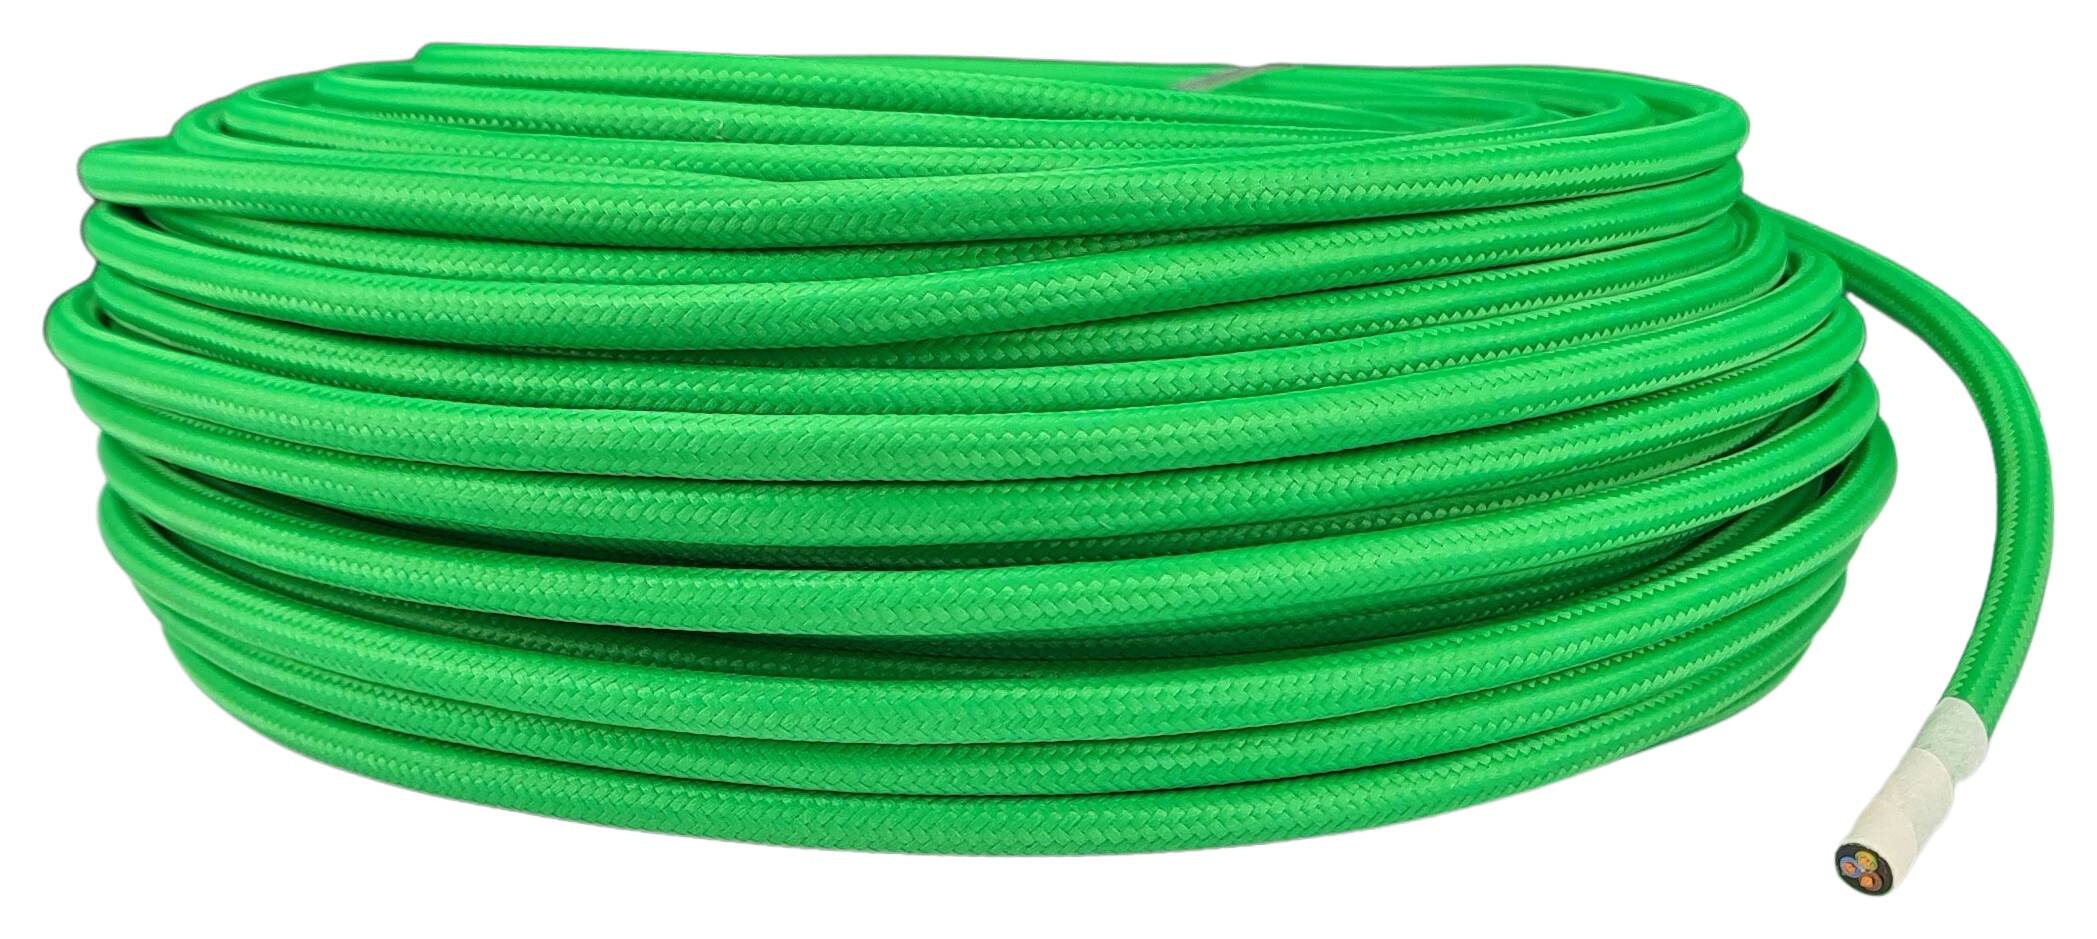 Kabel 3G 0,75 H03VV-F textilummantelt RAL 6038 grün